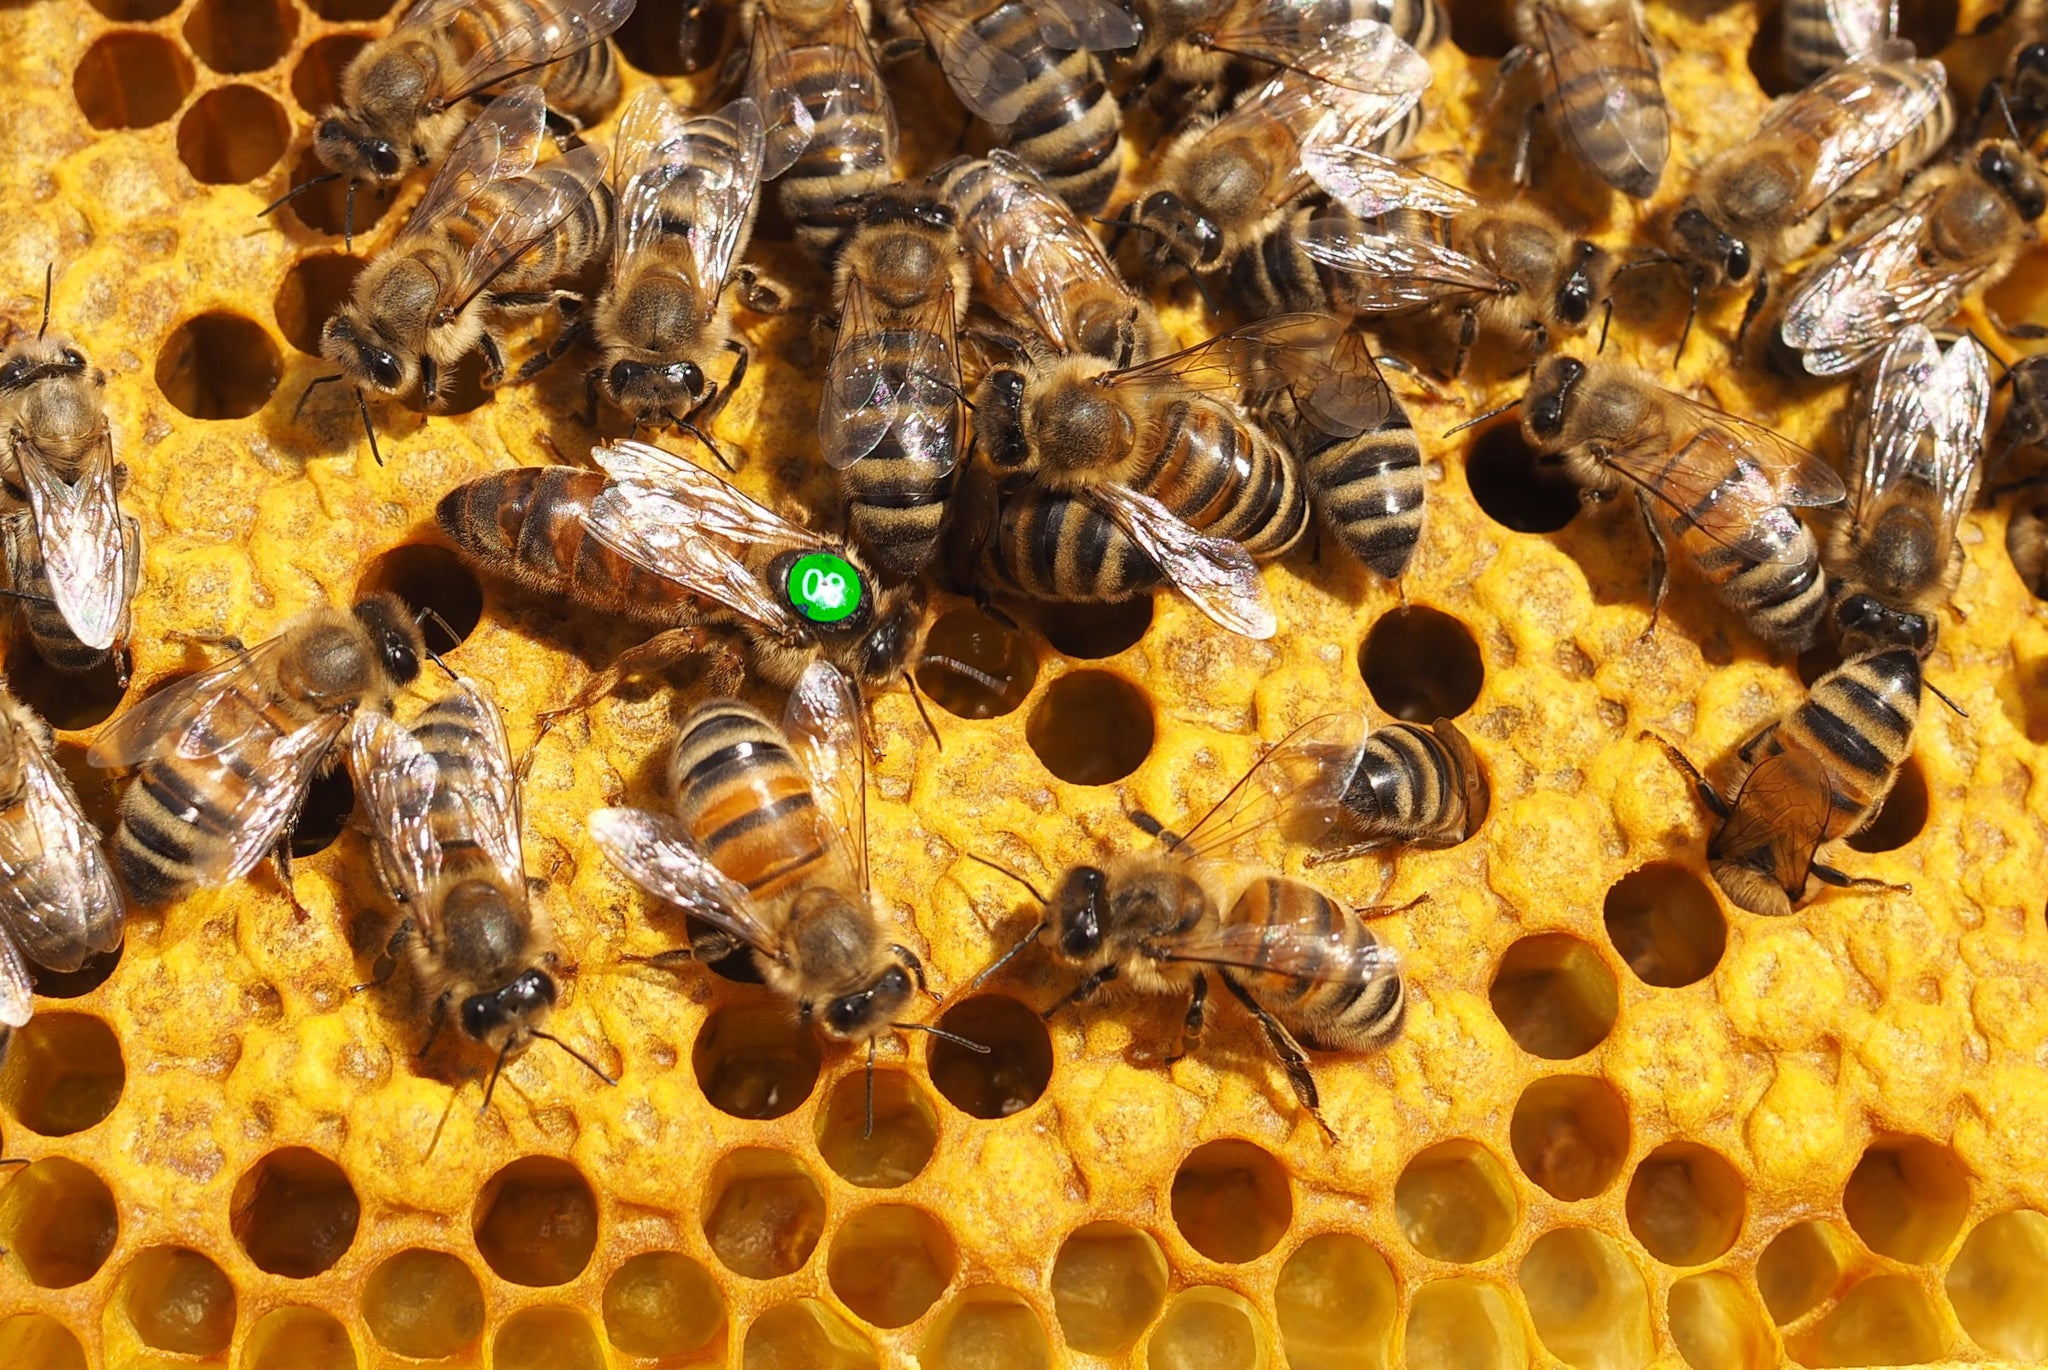 Tajemnice pszczelarza: rola i rozwój matki pszczelej.